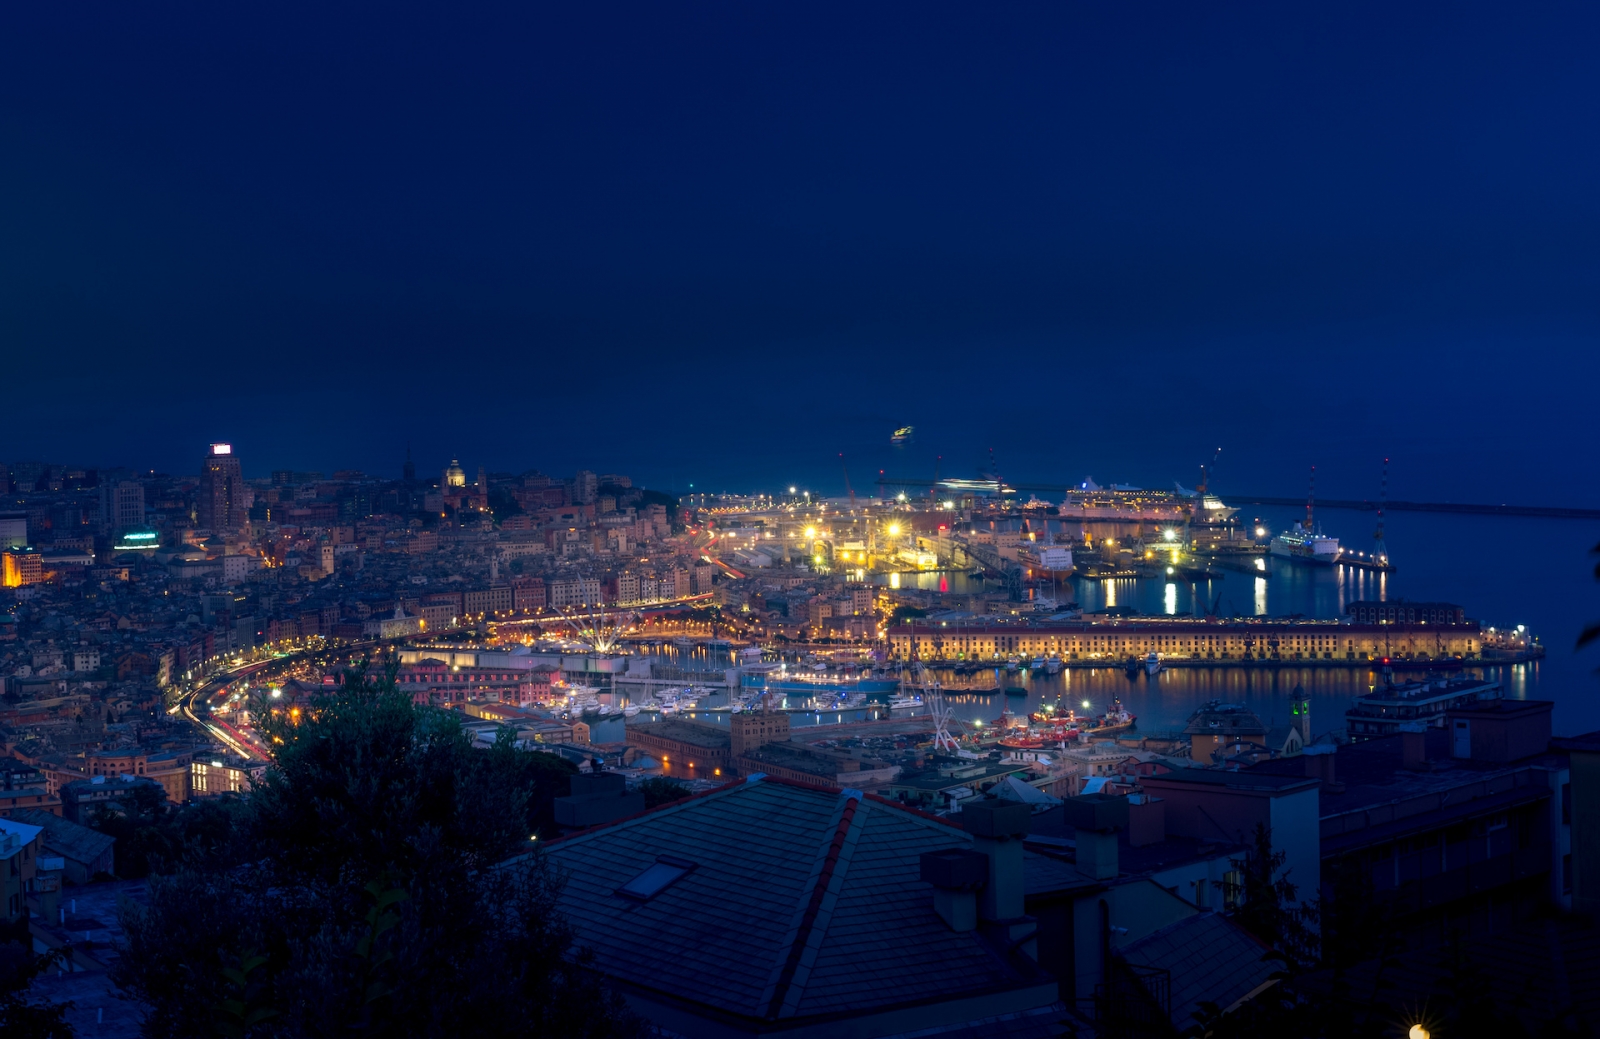 Paysage urbain nocturne de Gênes avec le vieux port, les navires de croisière, les grues maritimes et portuaires en arrière-plan